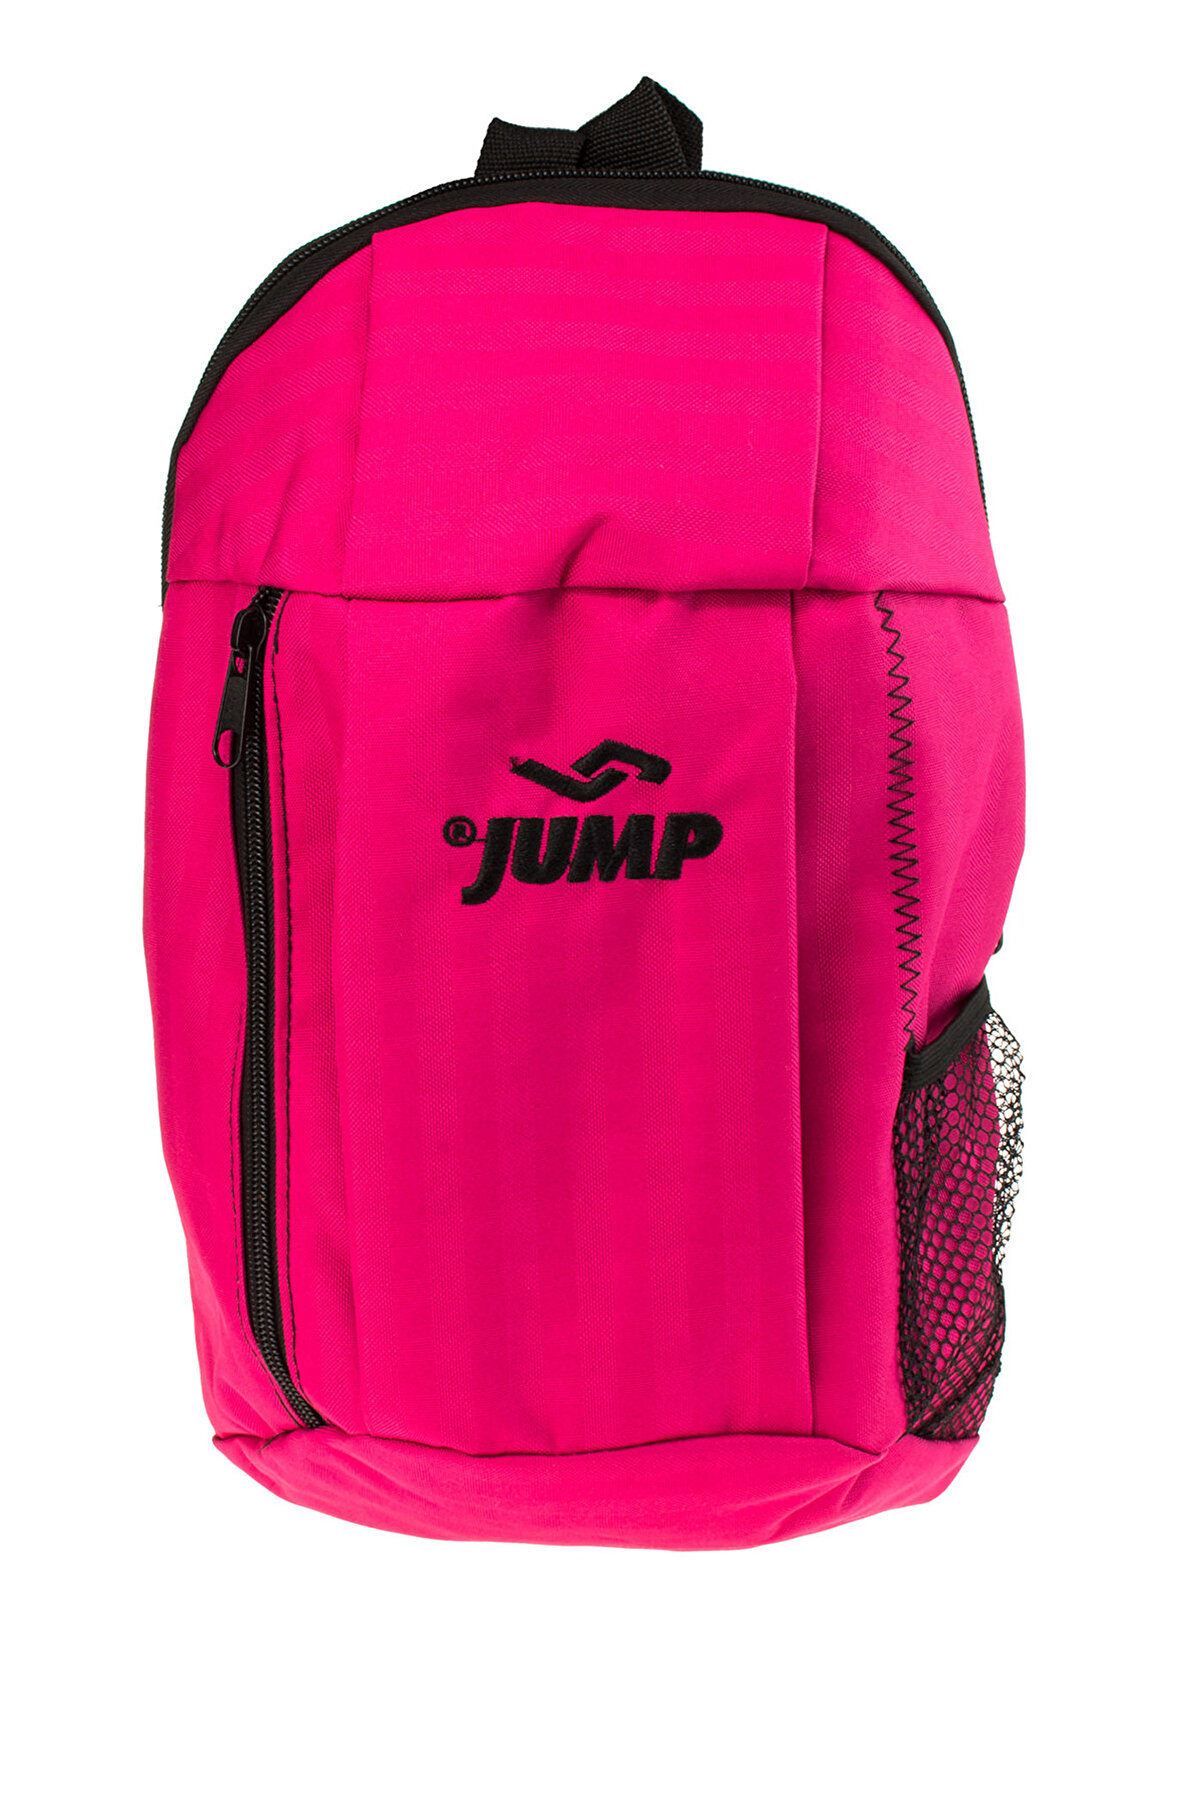 Jump Fuşya Unisex Çanta 301 1010A